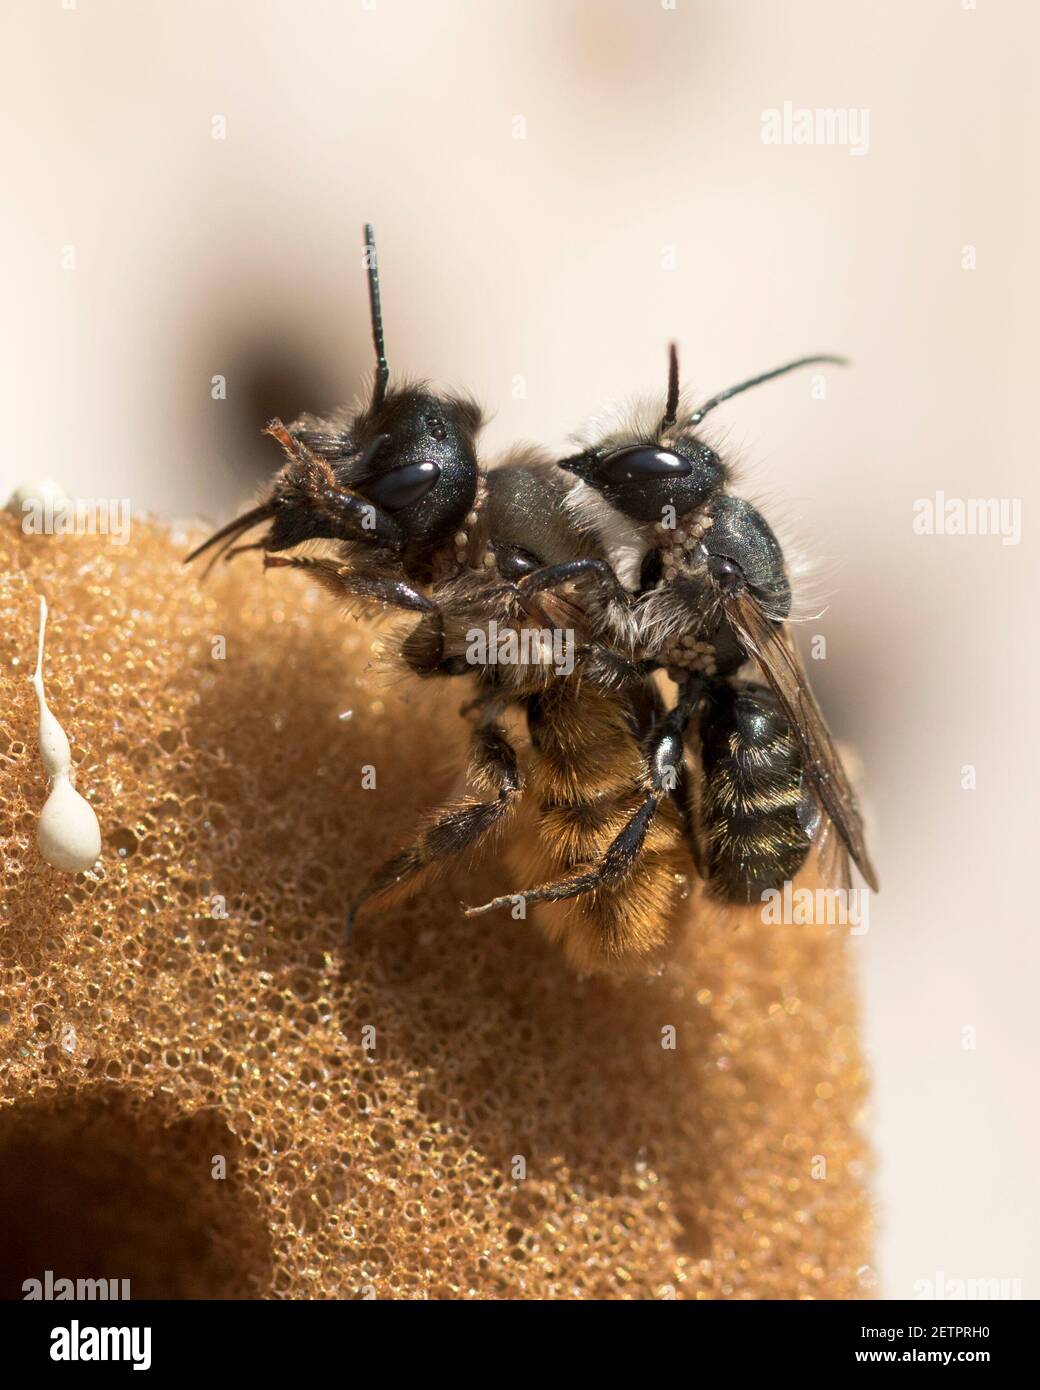 Les abeilles maçons rouges (Osmia bicornis) se conjuguées avec le mâle transférant les insectes polliniques à la femelle et infectant le nid. Banque D'Images